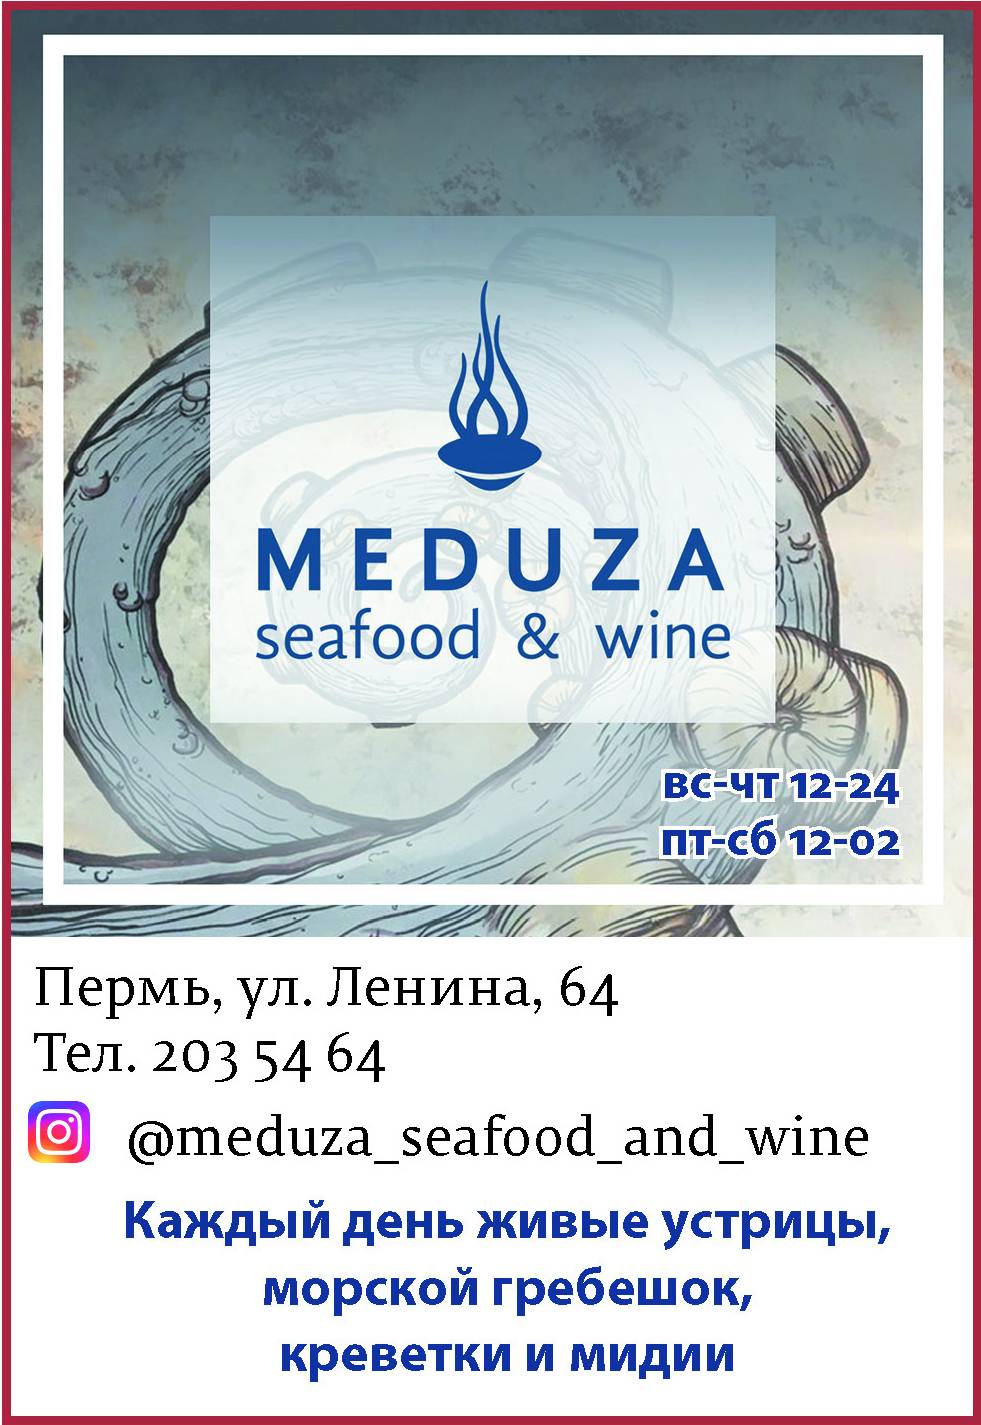 Попробовать море на вкус: в центре Перми открылось заведение MEDUZA Seafood&Wine